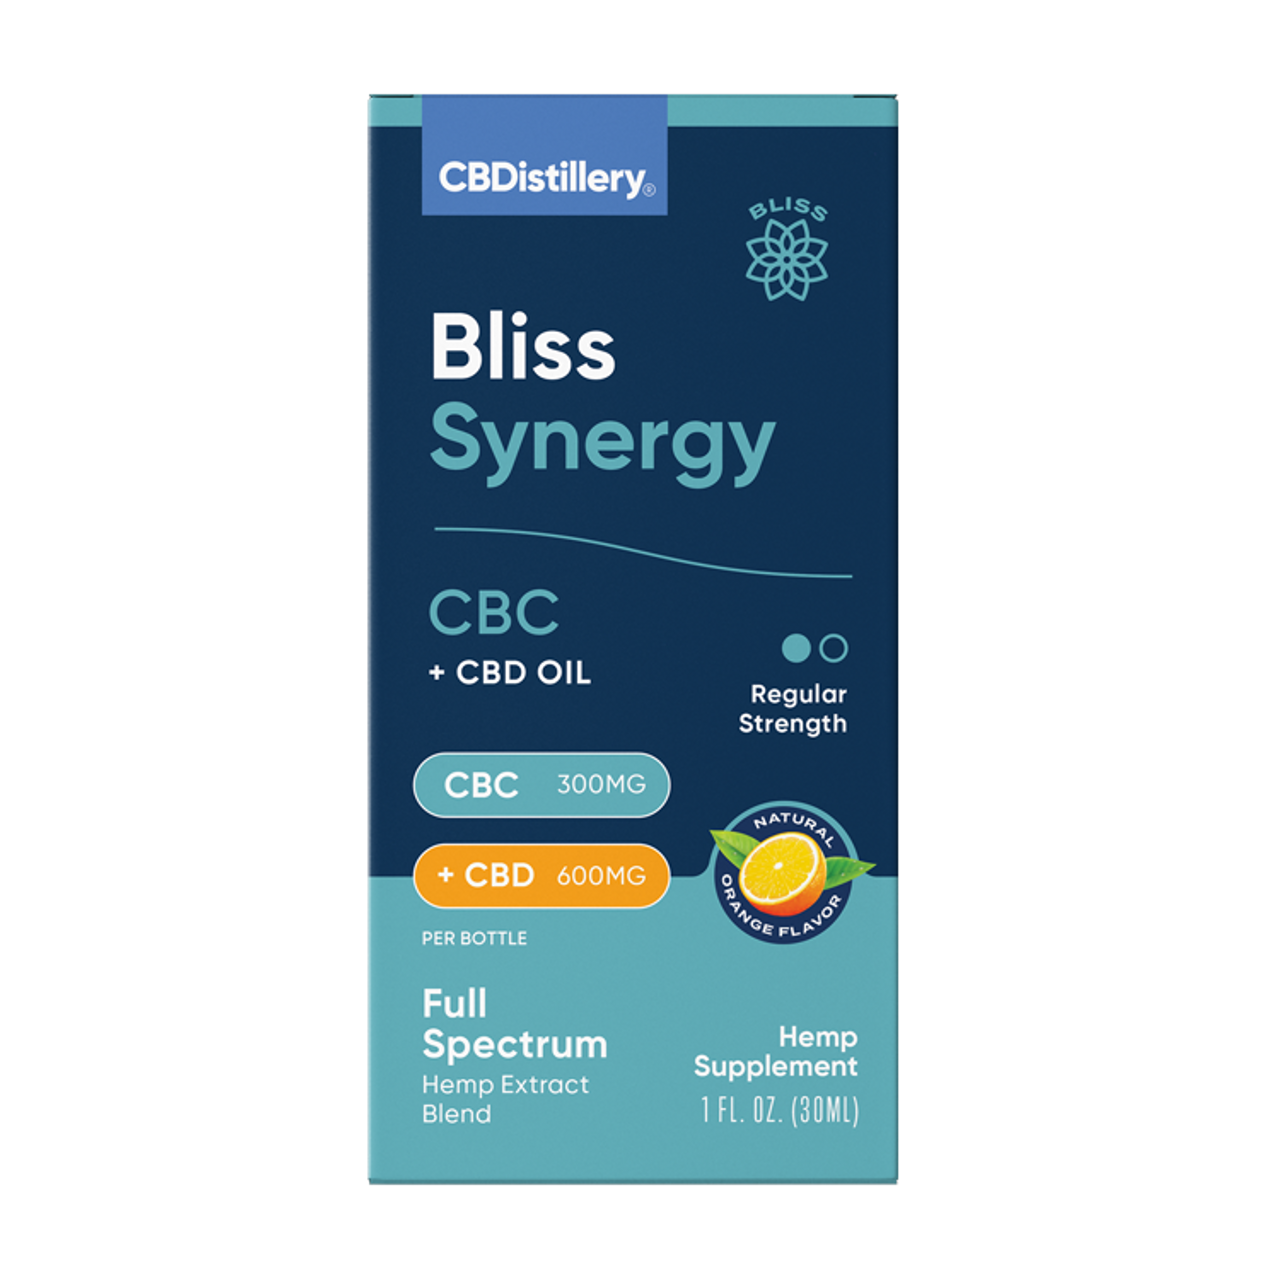 CBDistillery, Bliss Synergy CBC + CBD Tincture, Full Spectrum, 1oz, 300mg CBC + 600mg CBD